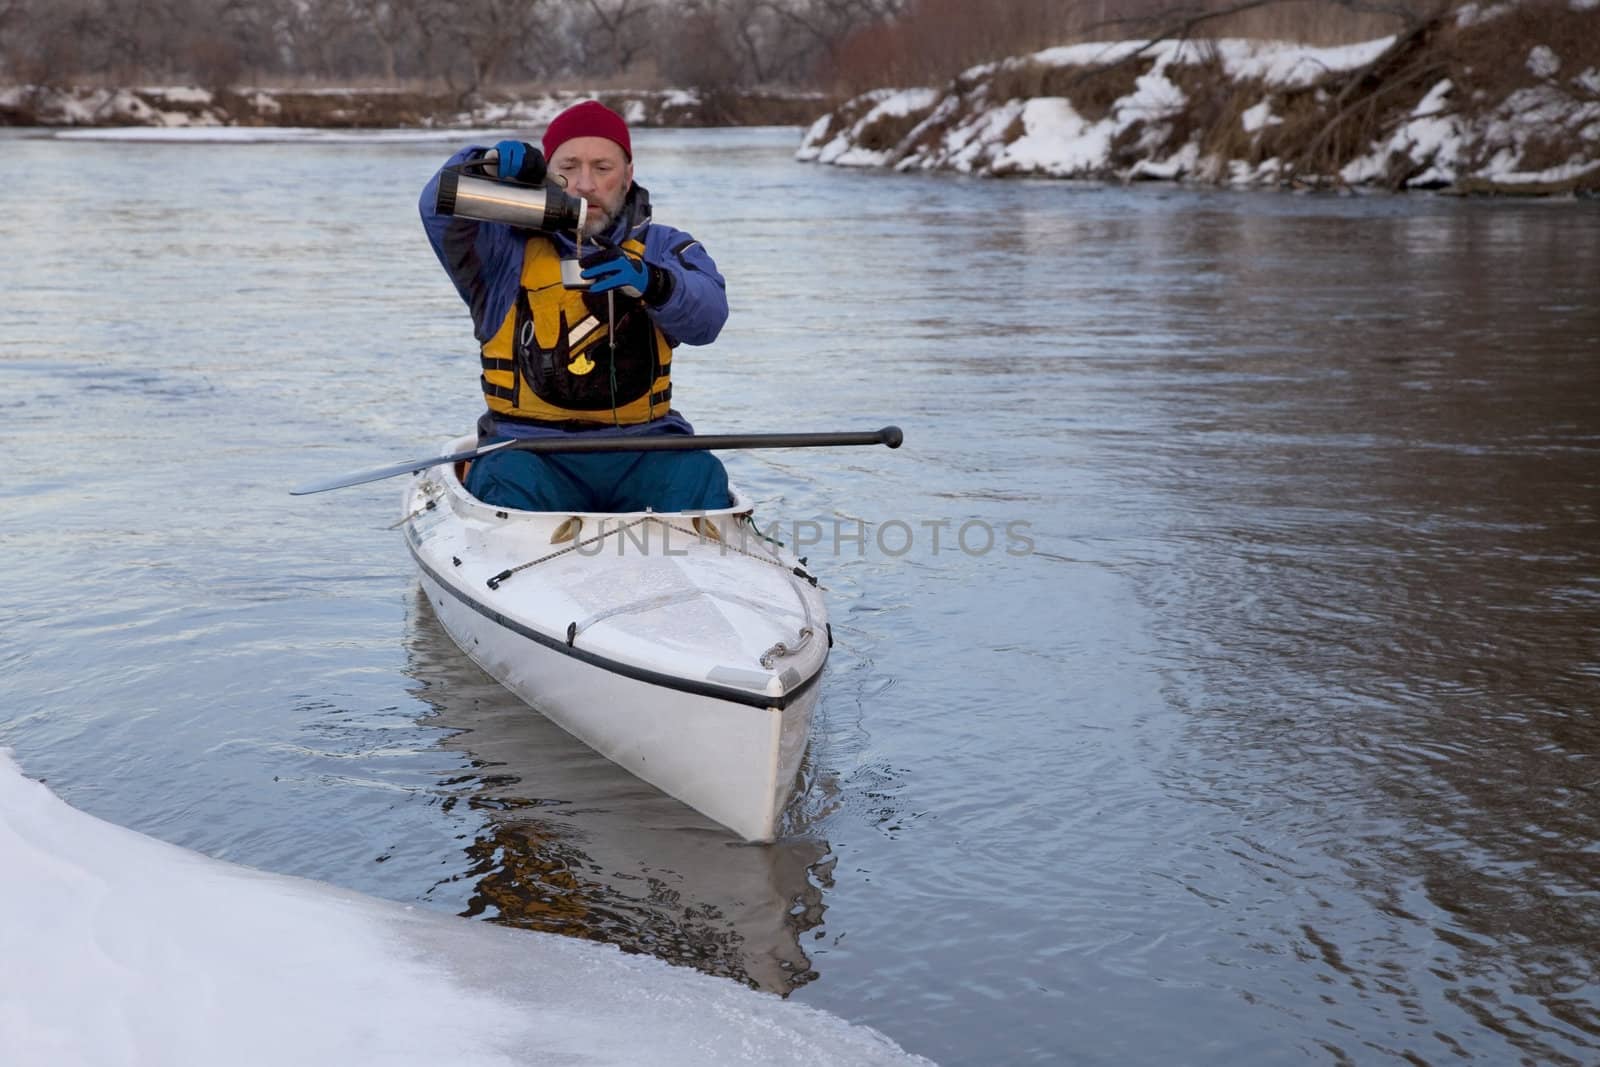 winter canoe - break for hot tea by PixelsAway